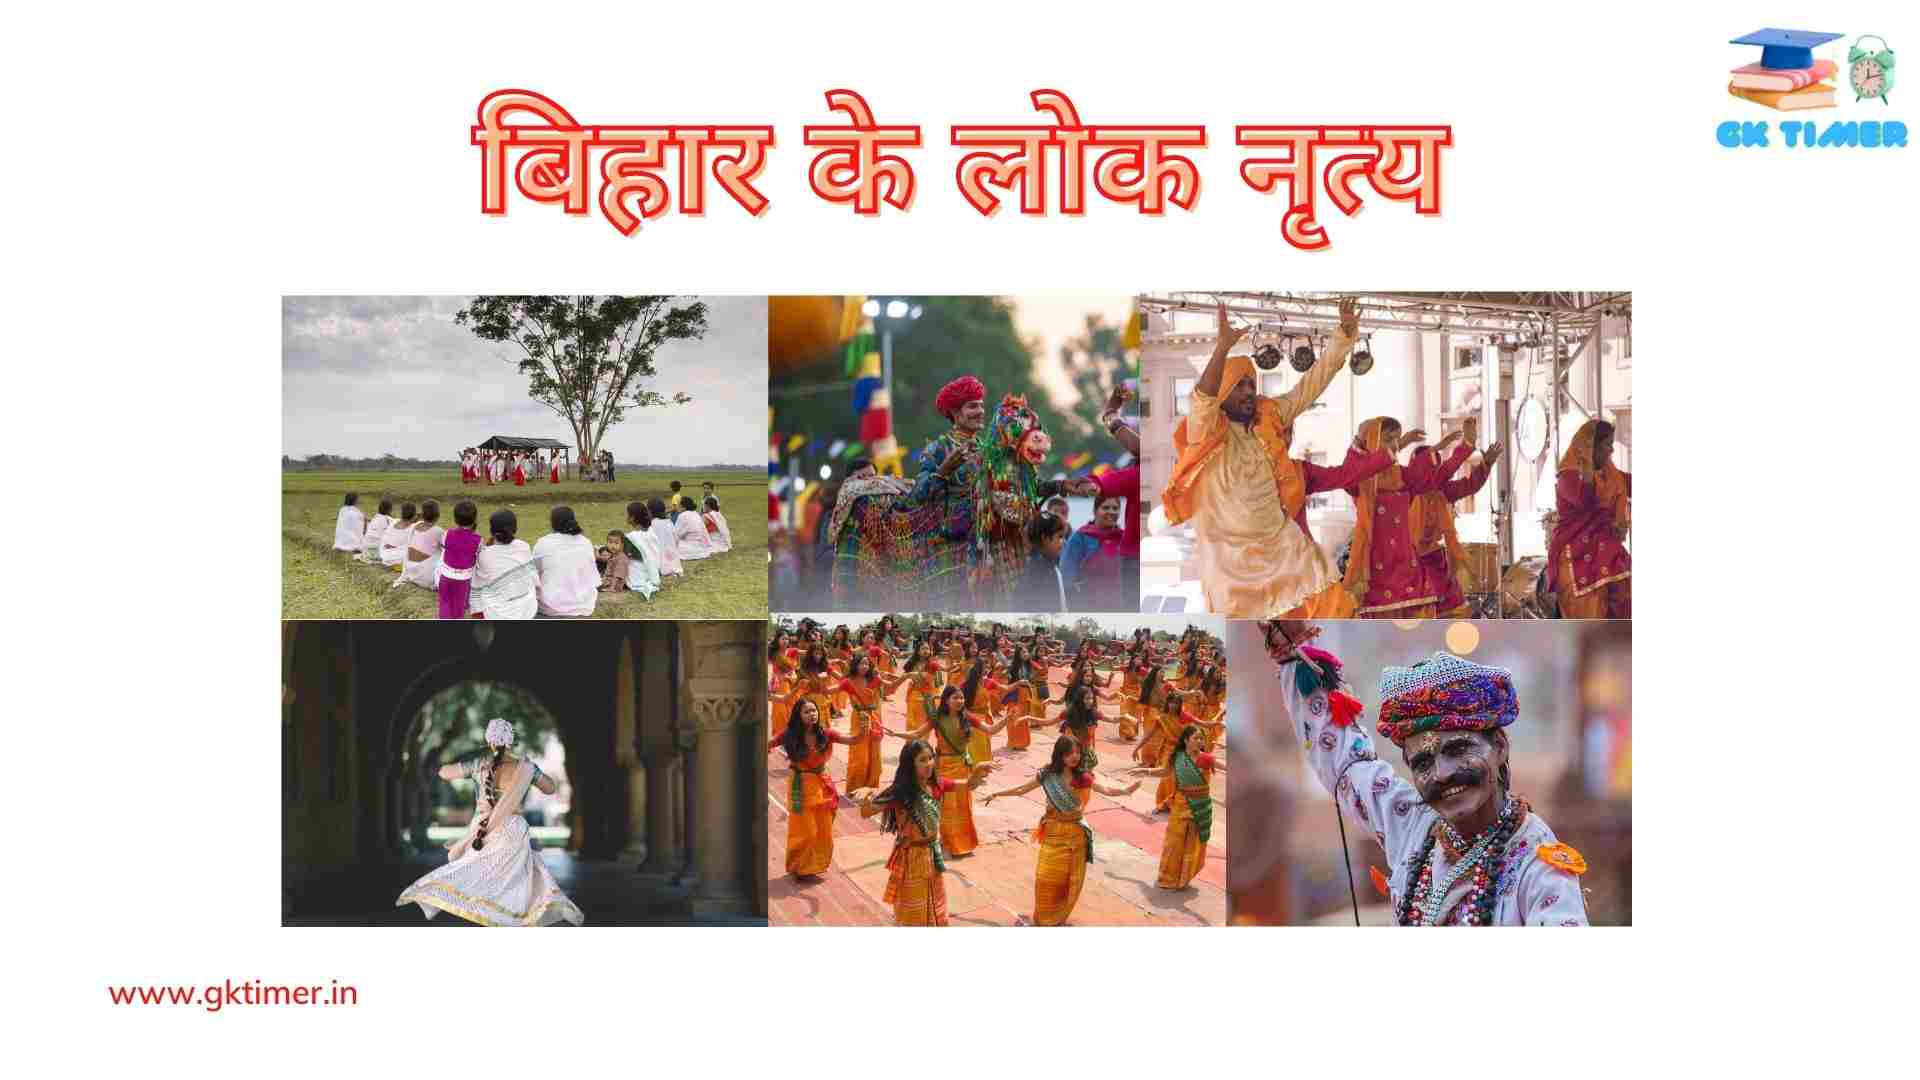 बिहार के पारंपरिक लोक नृत्य(बिदेसिया, जट जटिन, झिझिया, झुमरी, पाइका, सामा-चाकेवा) | Traditional folk dances of Bihar in Hindi